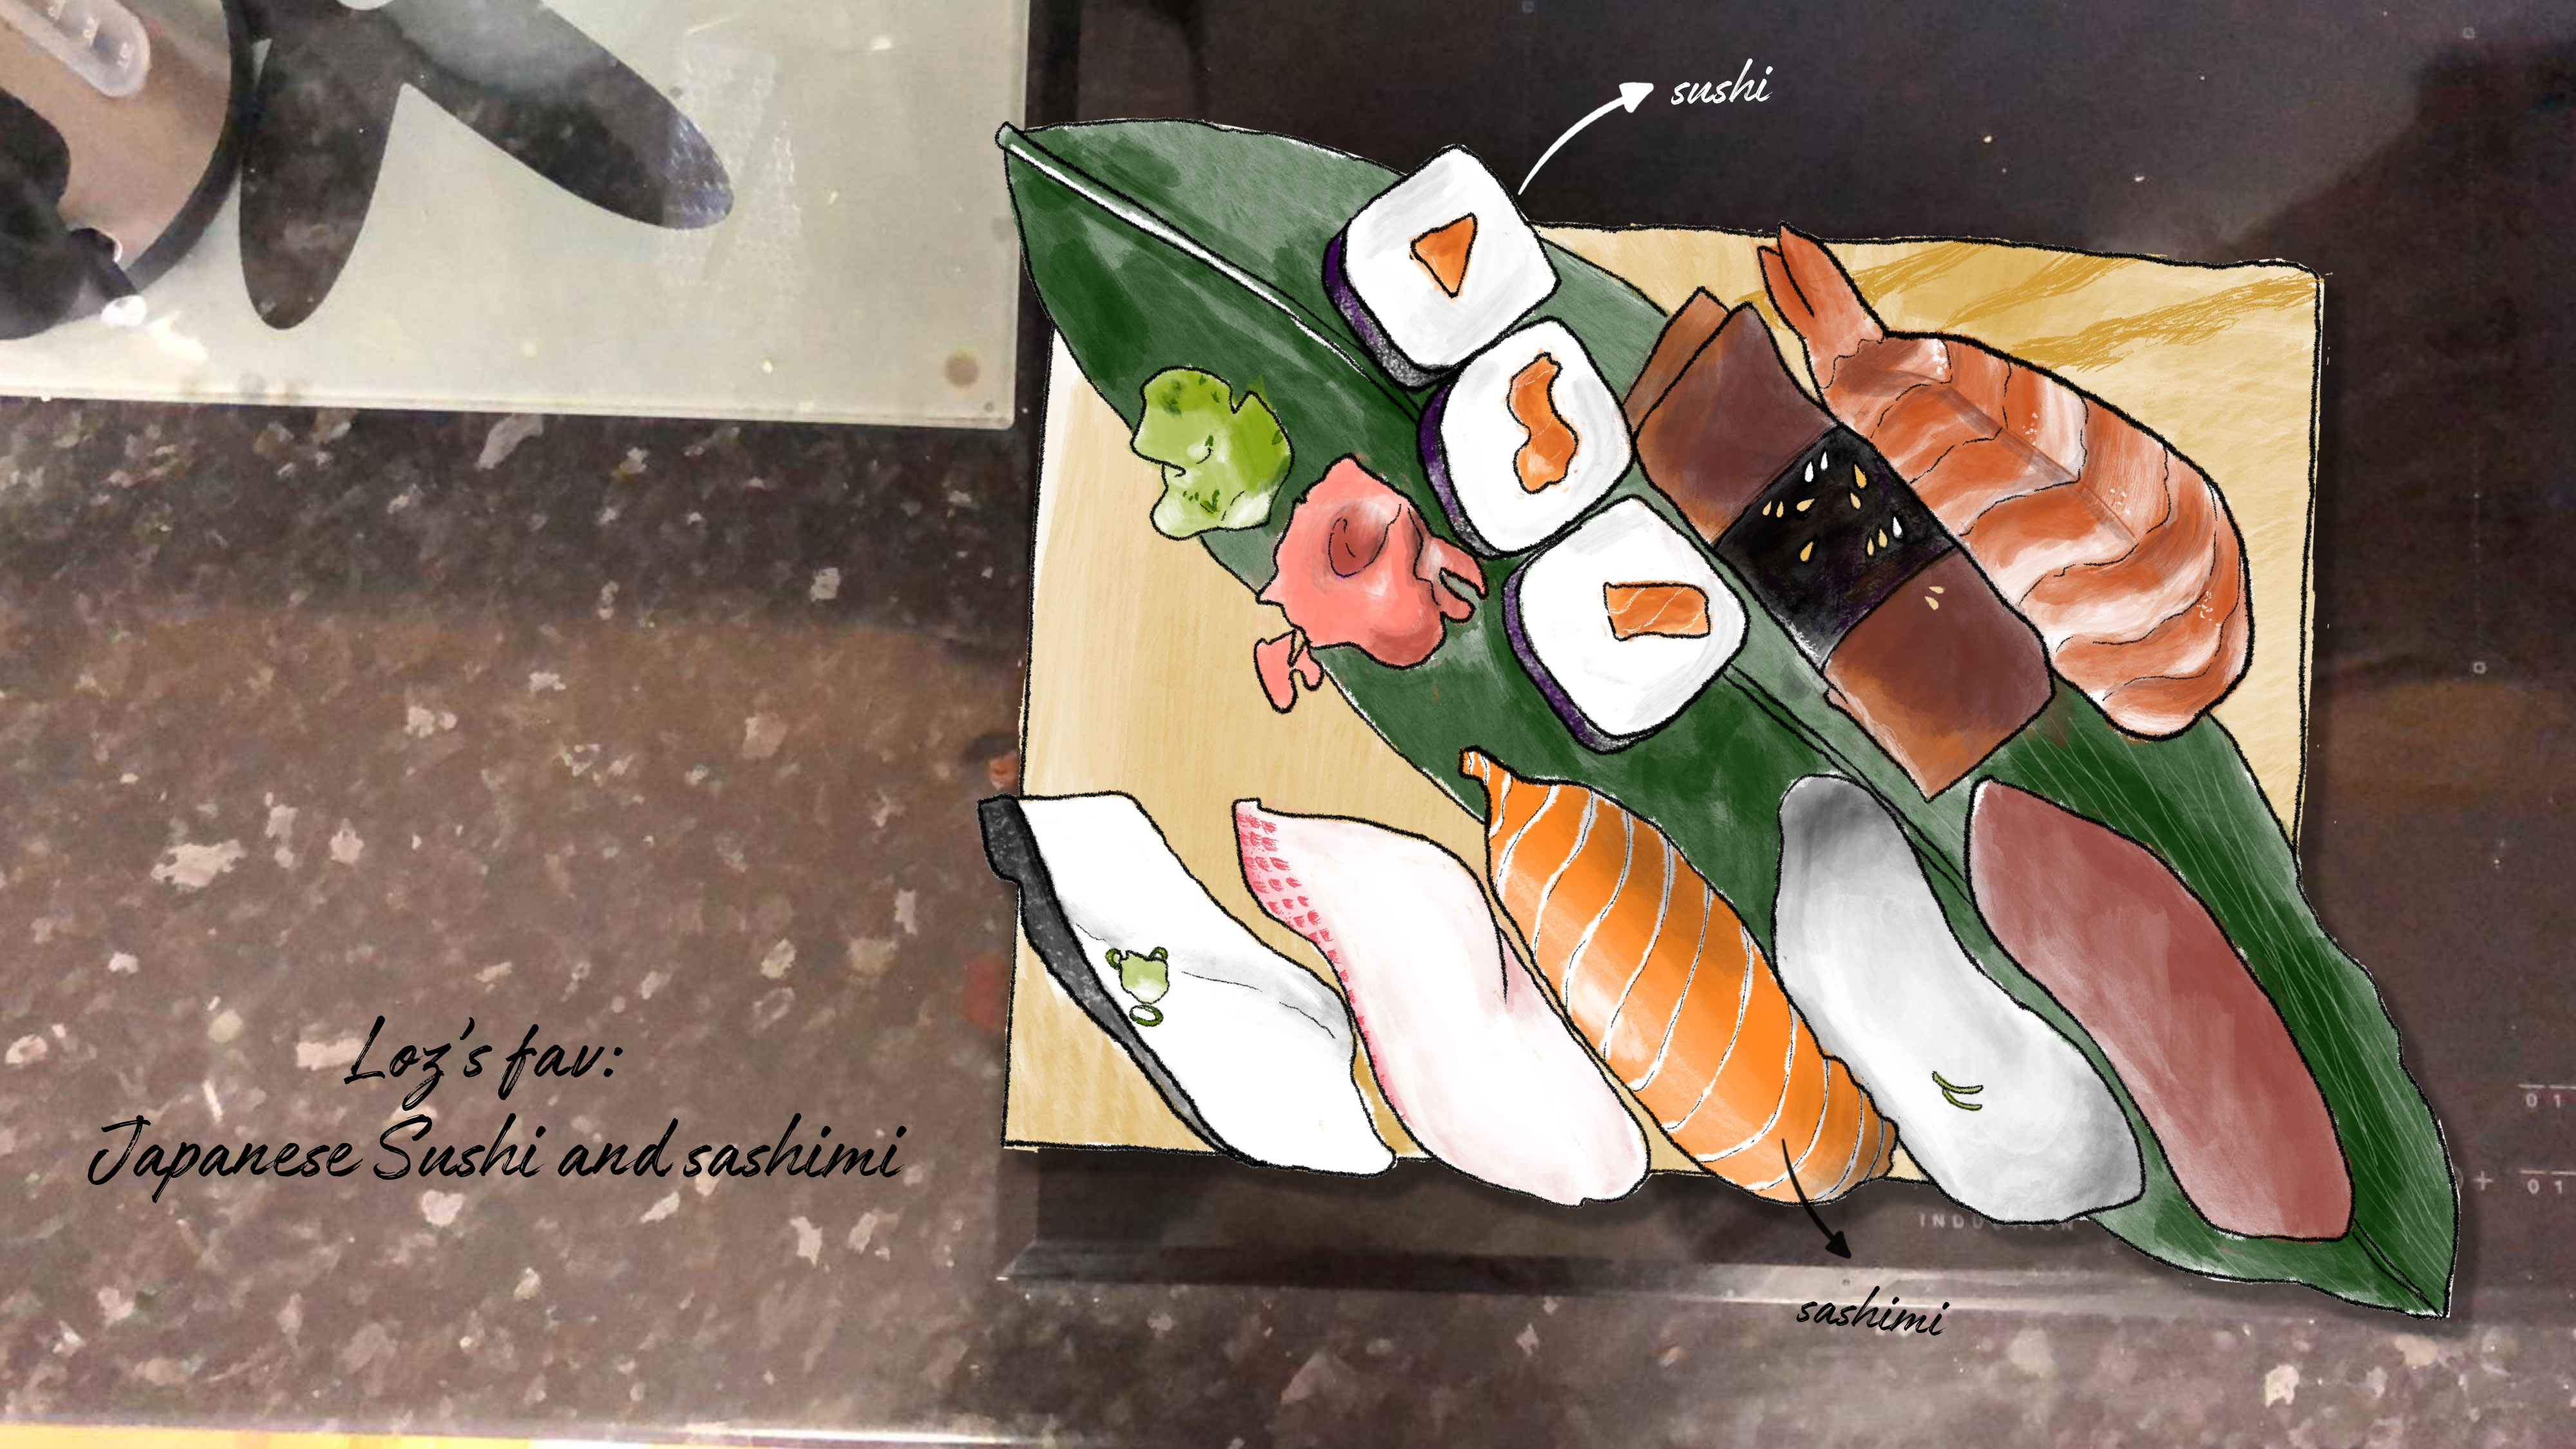 Japanese Sushi and sashimi